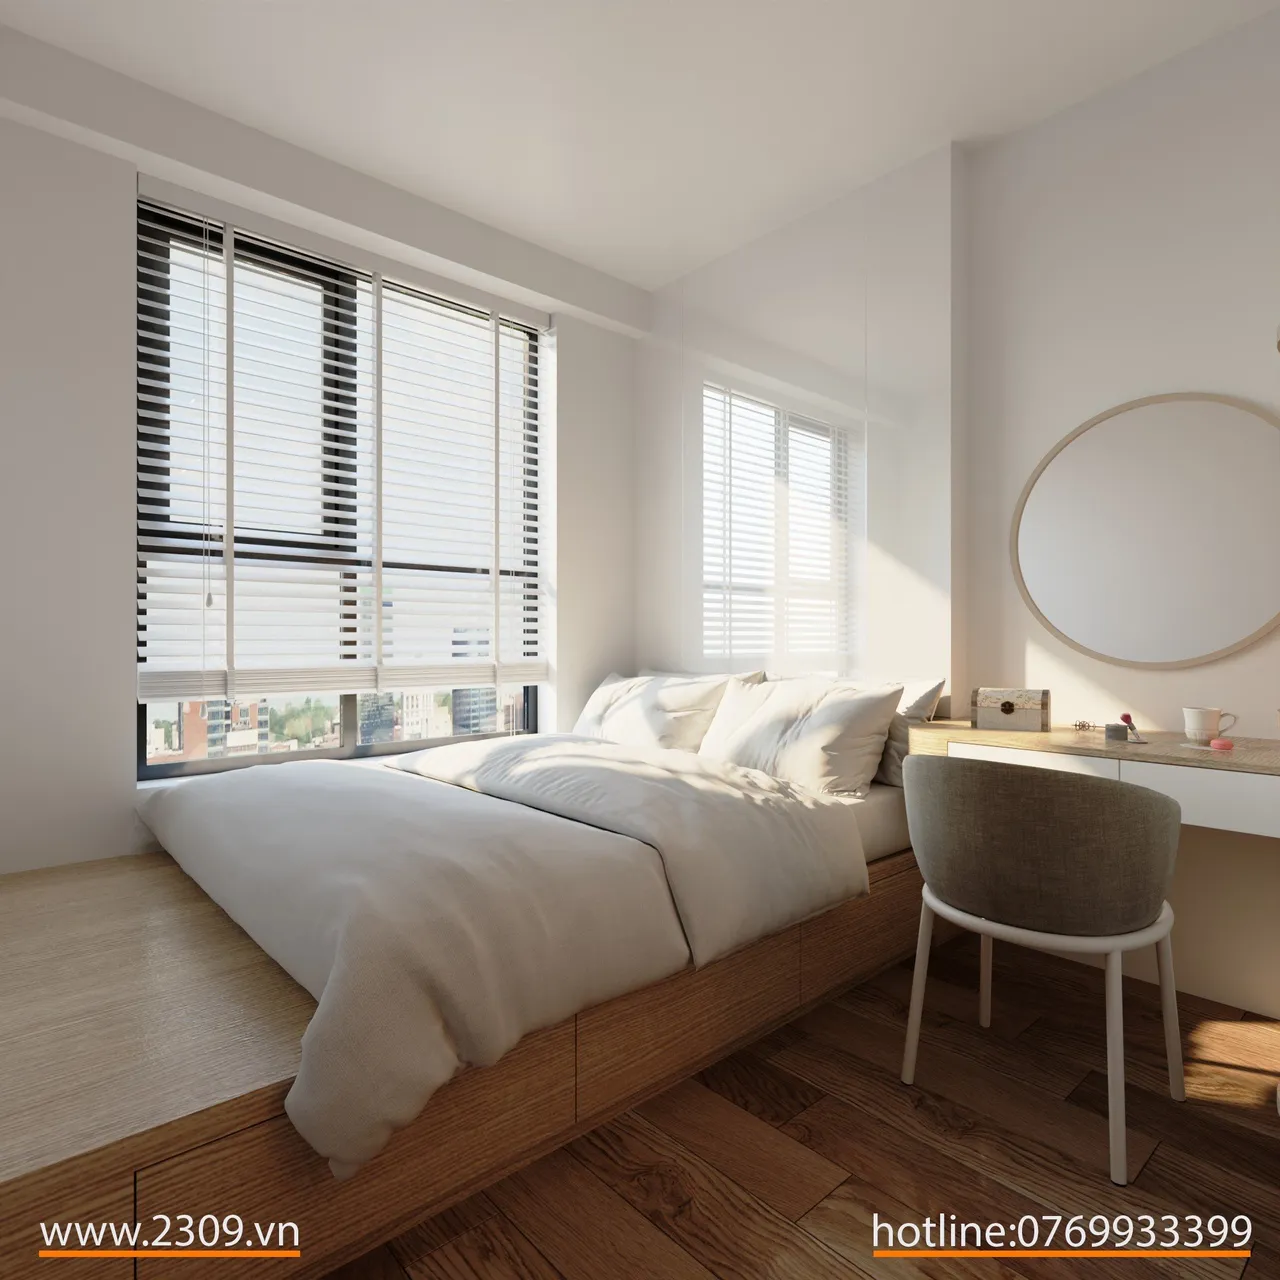 Concept nội thất phòng ngủ Căn hộ Bcons Dĩ An, Bình Dương phong cách Bắc Âu Scandinavian